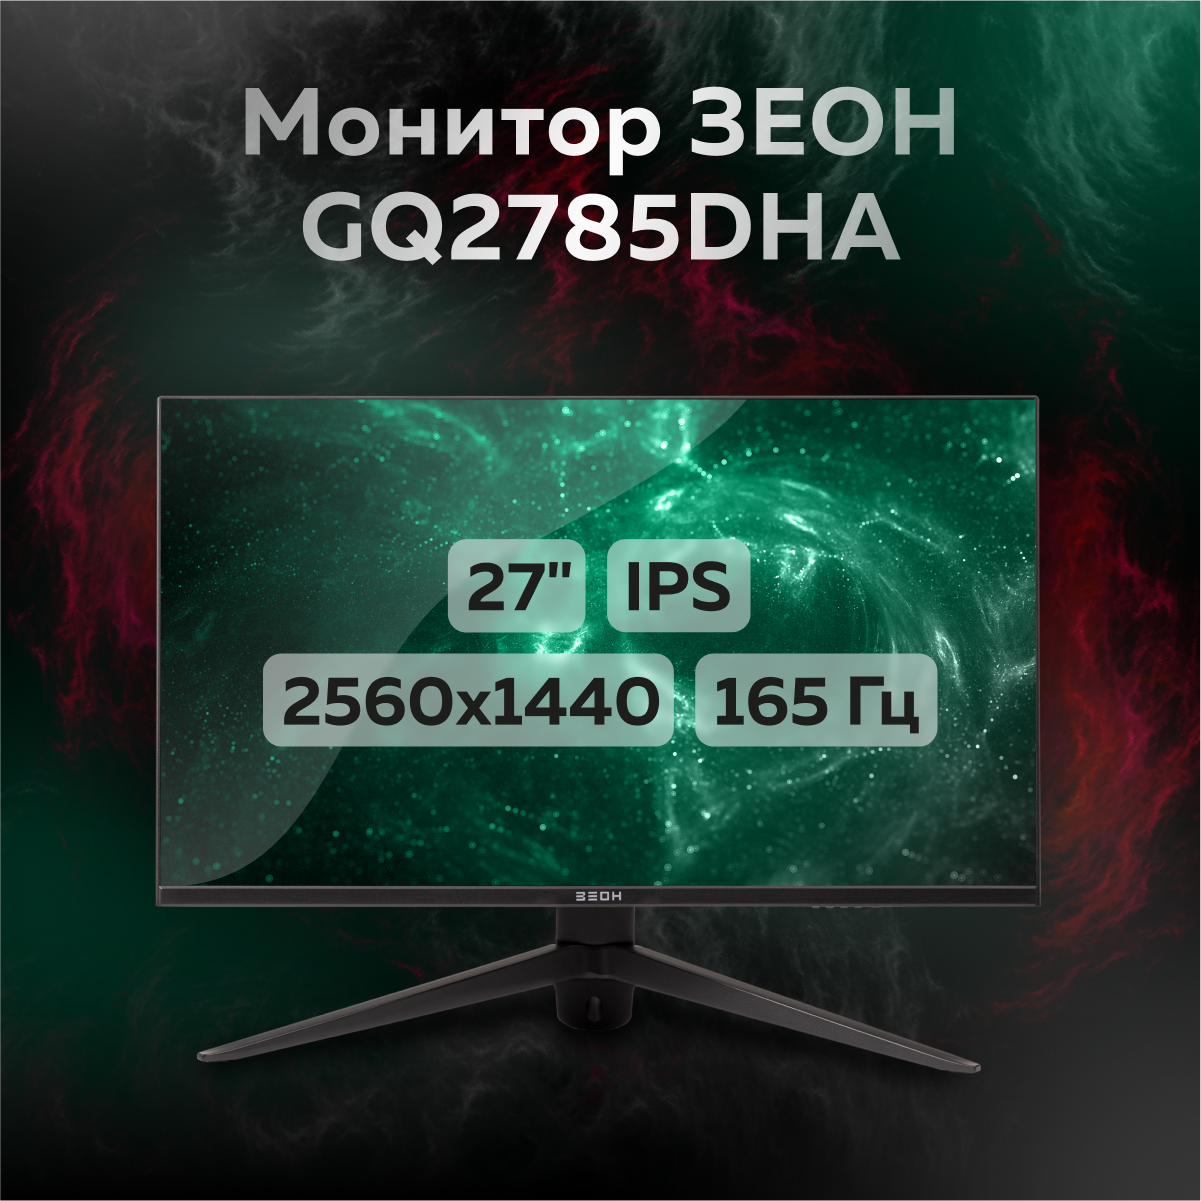 27" Монитор ЗЕОН GQ2785DHA черный 165Hz 2560x1440 IPS, купить в Москве, цены в интернет-магазинах на Мегамаркет